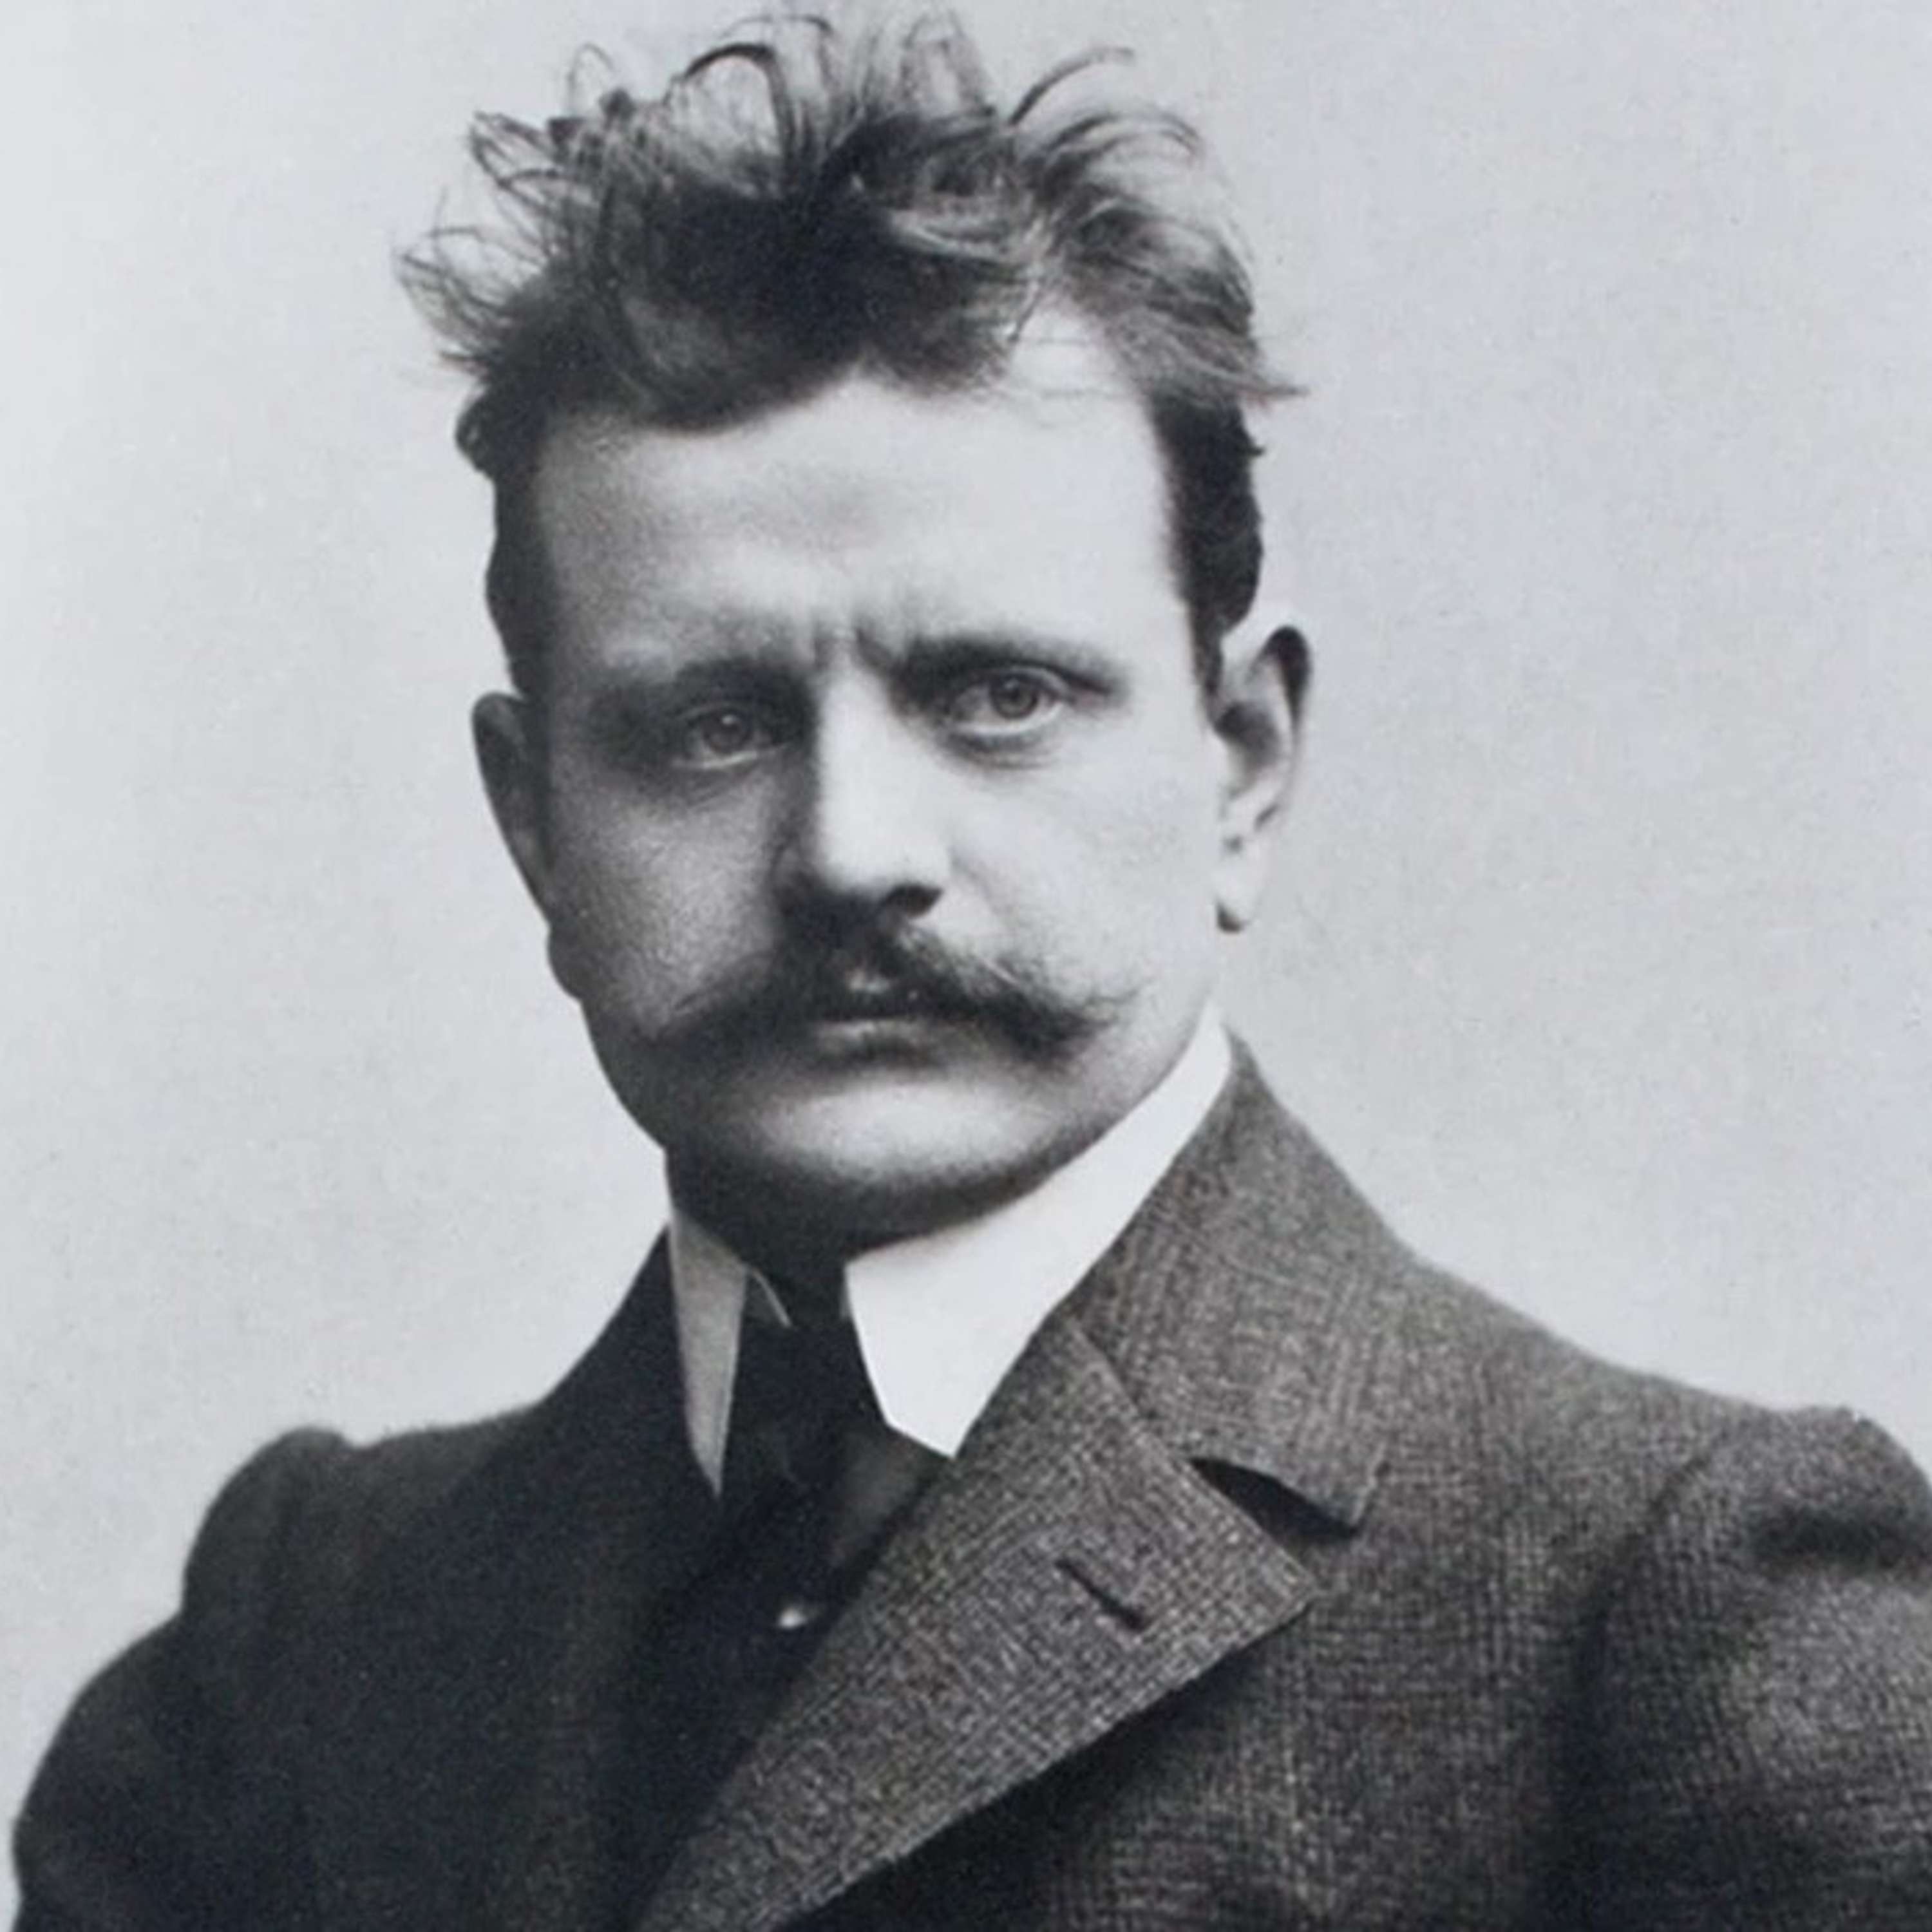 La Musica di Ameria Radio del 4 aprile 2024 musica di Jean Sibelius (1865 - 1957)